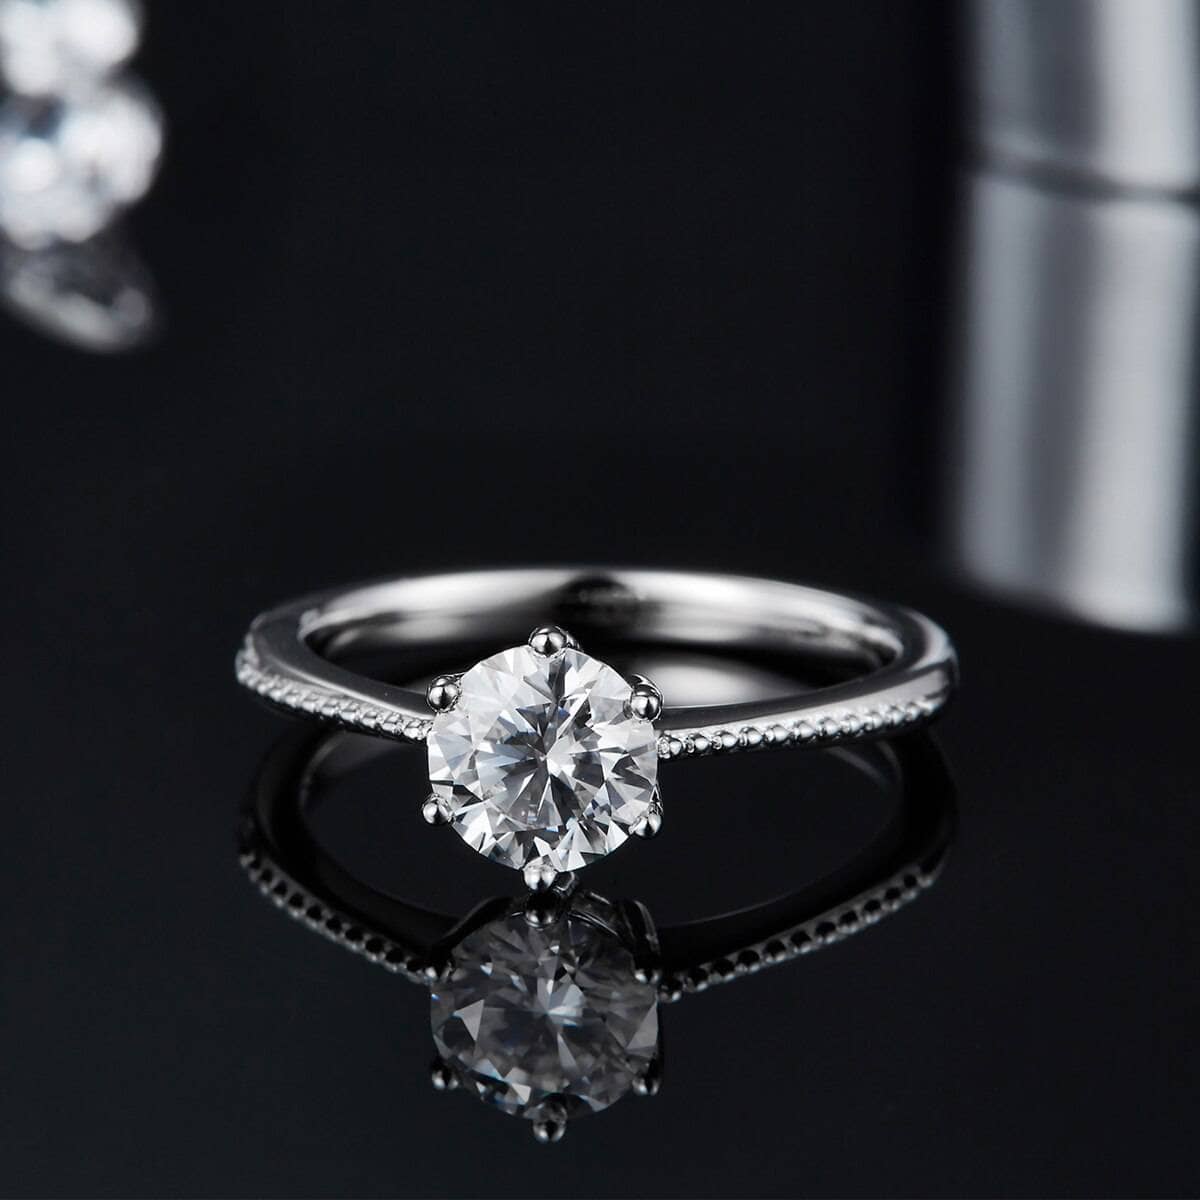 1Ct VVS1 Moissanite Diamond Promise Ring - Black Diamonds New York